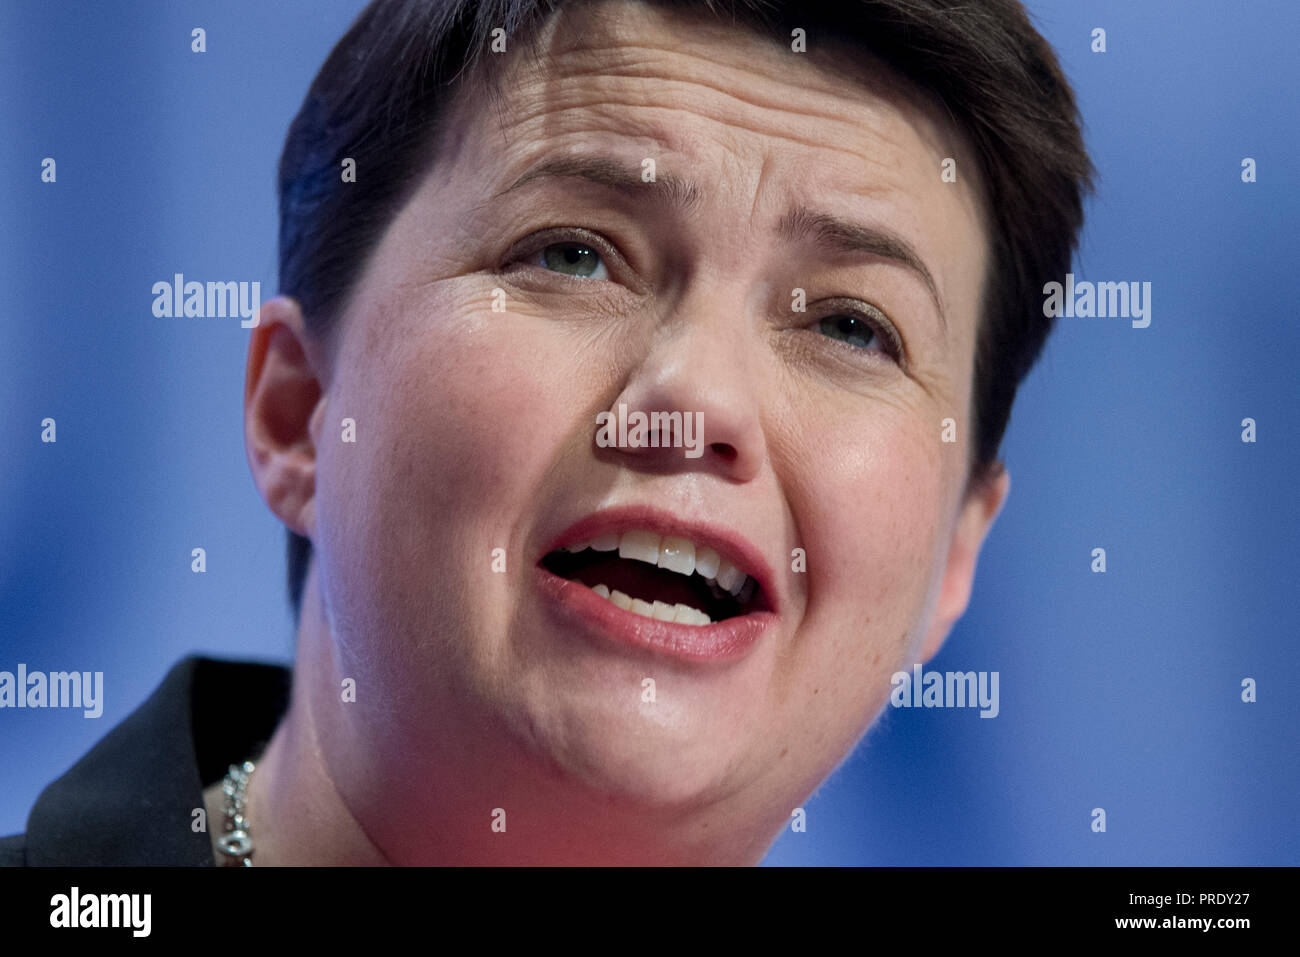 Birmingham, Regno Unito. 1 ottobre 2018. Ruth Davidson, leader del Partito conservatore scozzese, parla al congresso del Partito Conservatore di Birmingham. © Russell Hart/Alamy Live News. Foto Stock